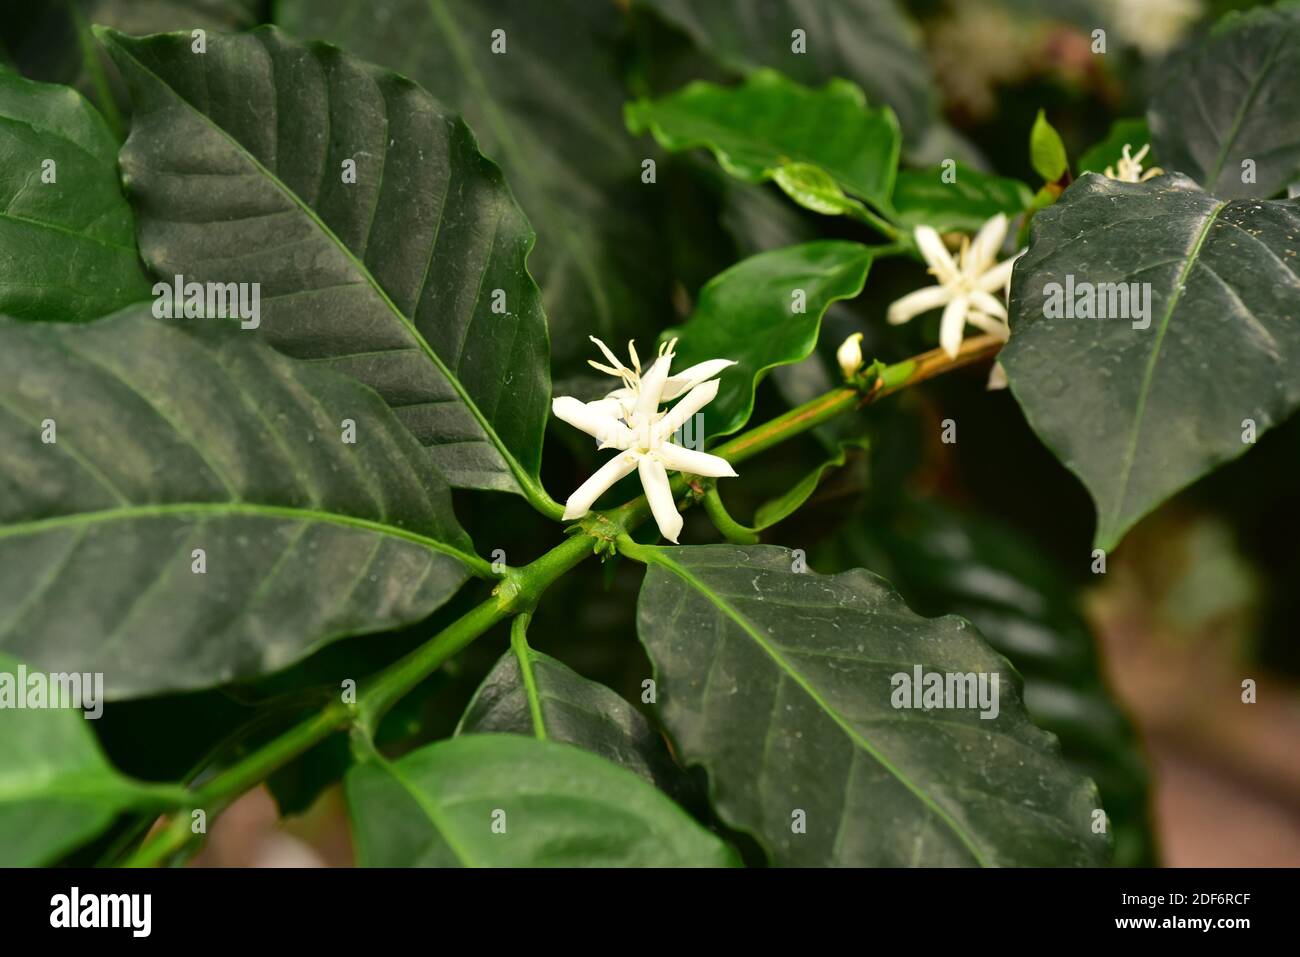 Il caffè arabo o arabica (Coffea arabica) è un albero perenne o arbusto originario degli altopiani dell'Etiopia e dello Yemen. La sua frutta arrosto Foto Stock